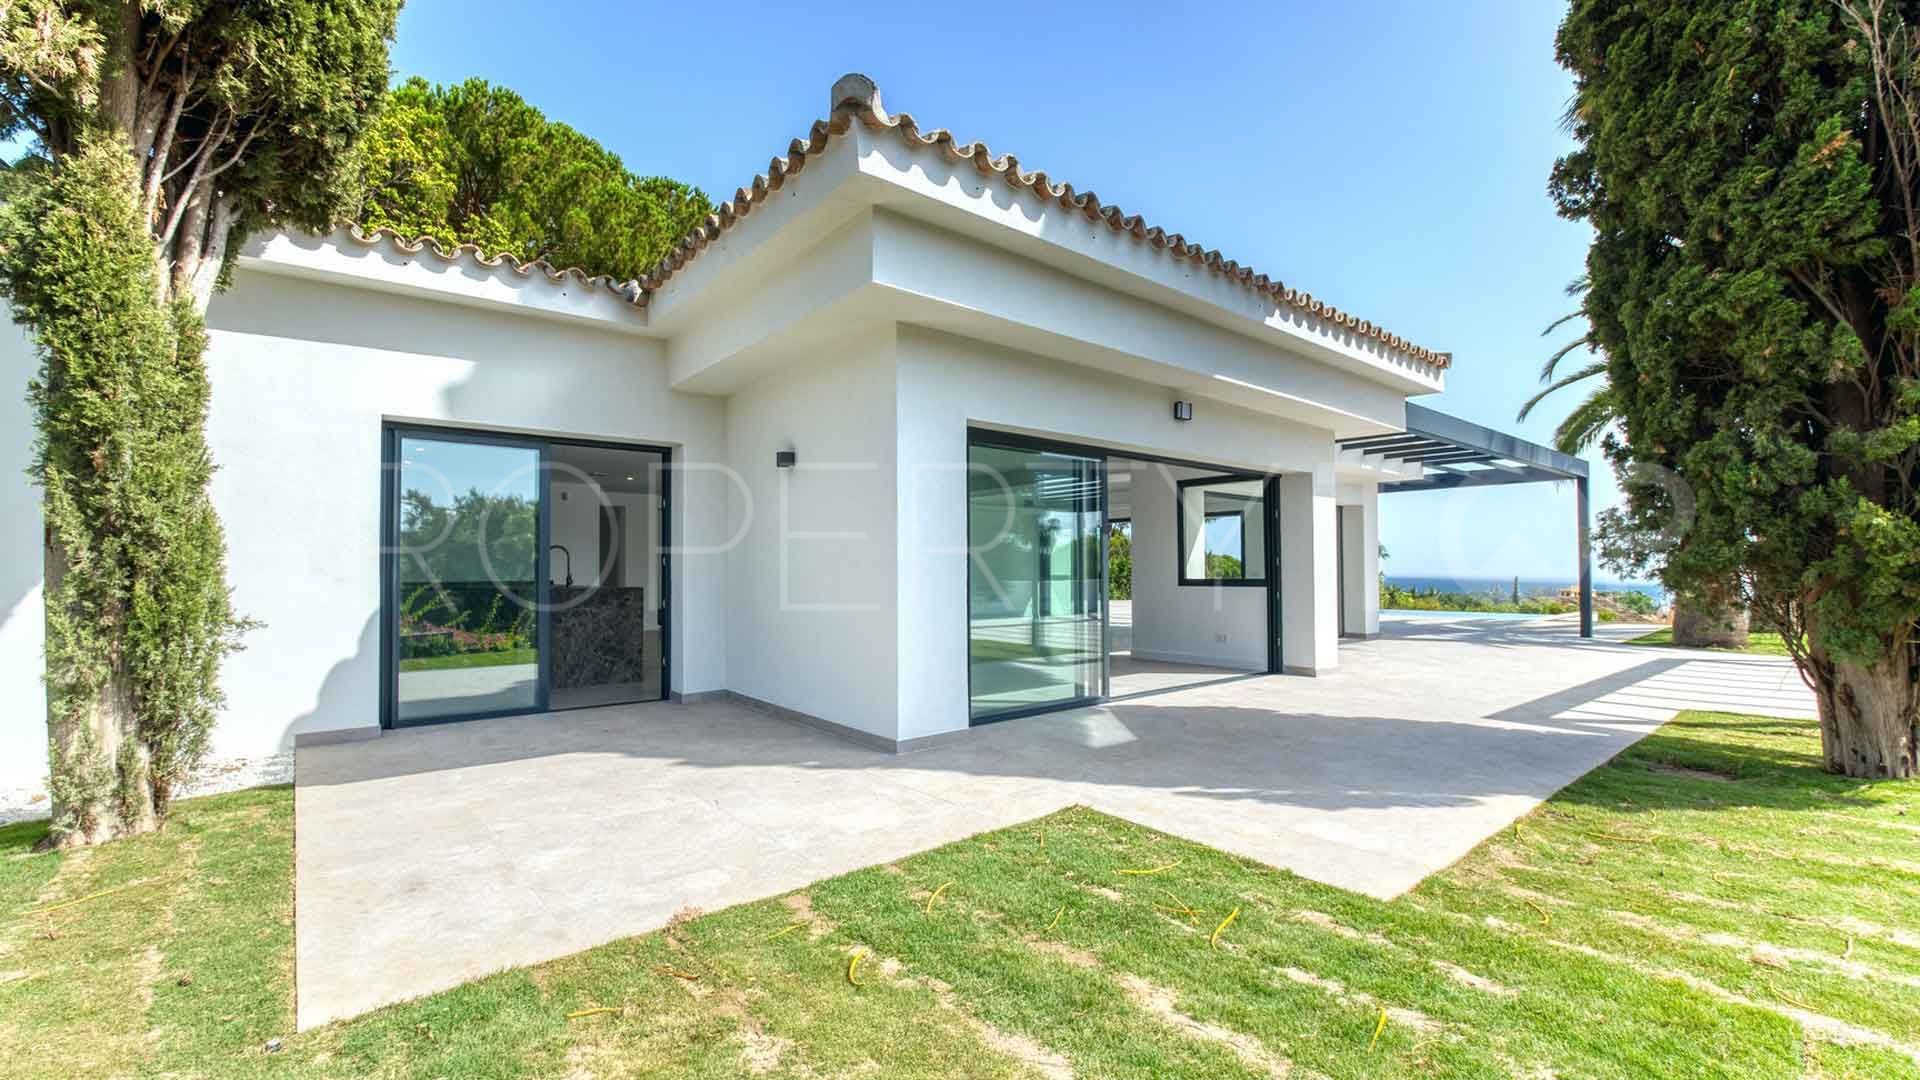 4 bedrooms villa in Altos de Elviria for sale